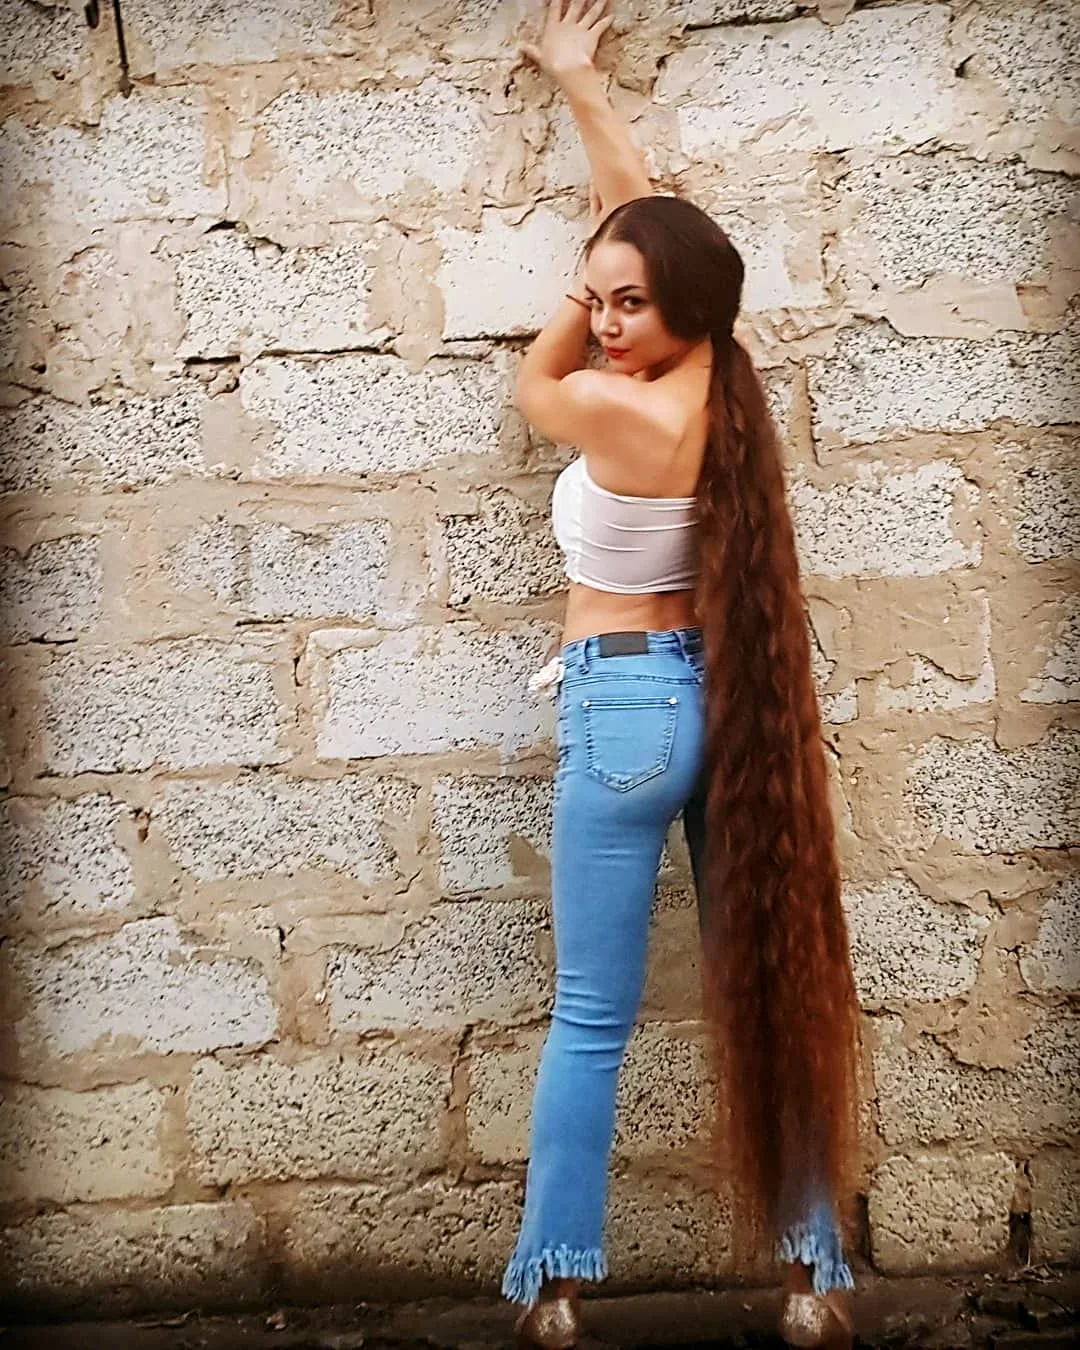 Bella_Anna длинные волосы